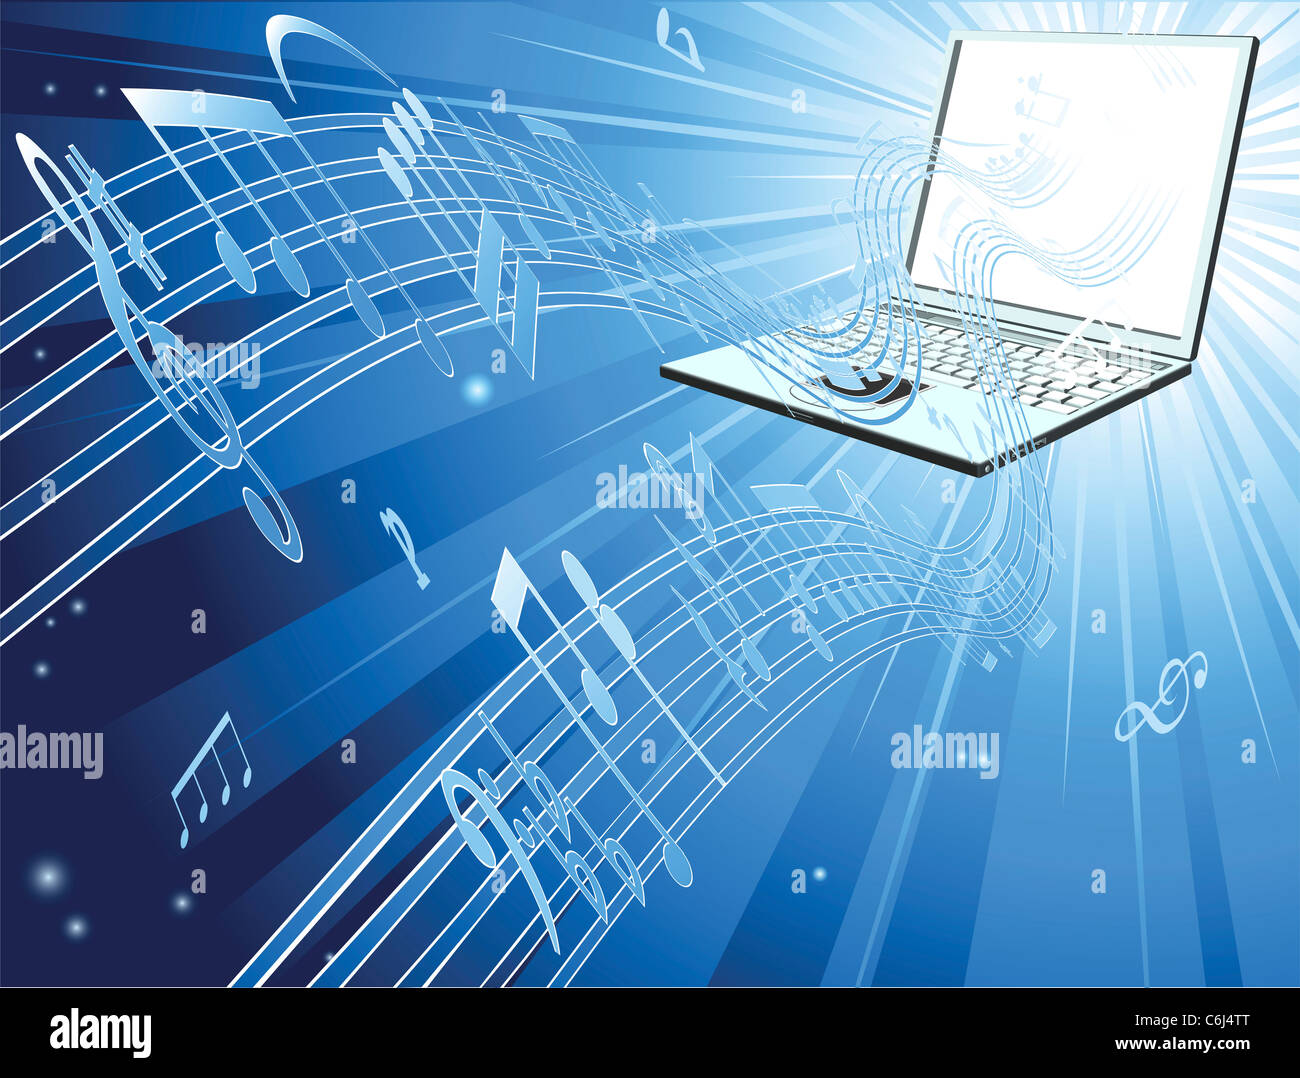 Современные технологии в музыке. Музыкально-компьютерные технологии в образовании. Цифровые технологии в Музыке. Музыкальная Информатика. Музыкальныекомпьютерне технологии.